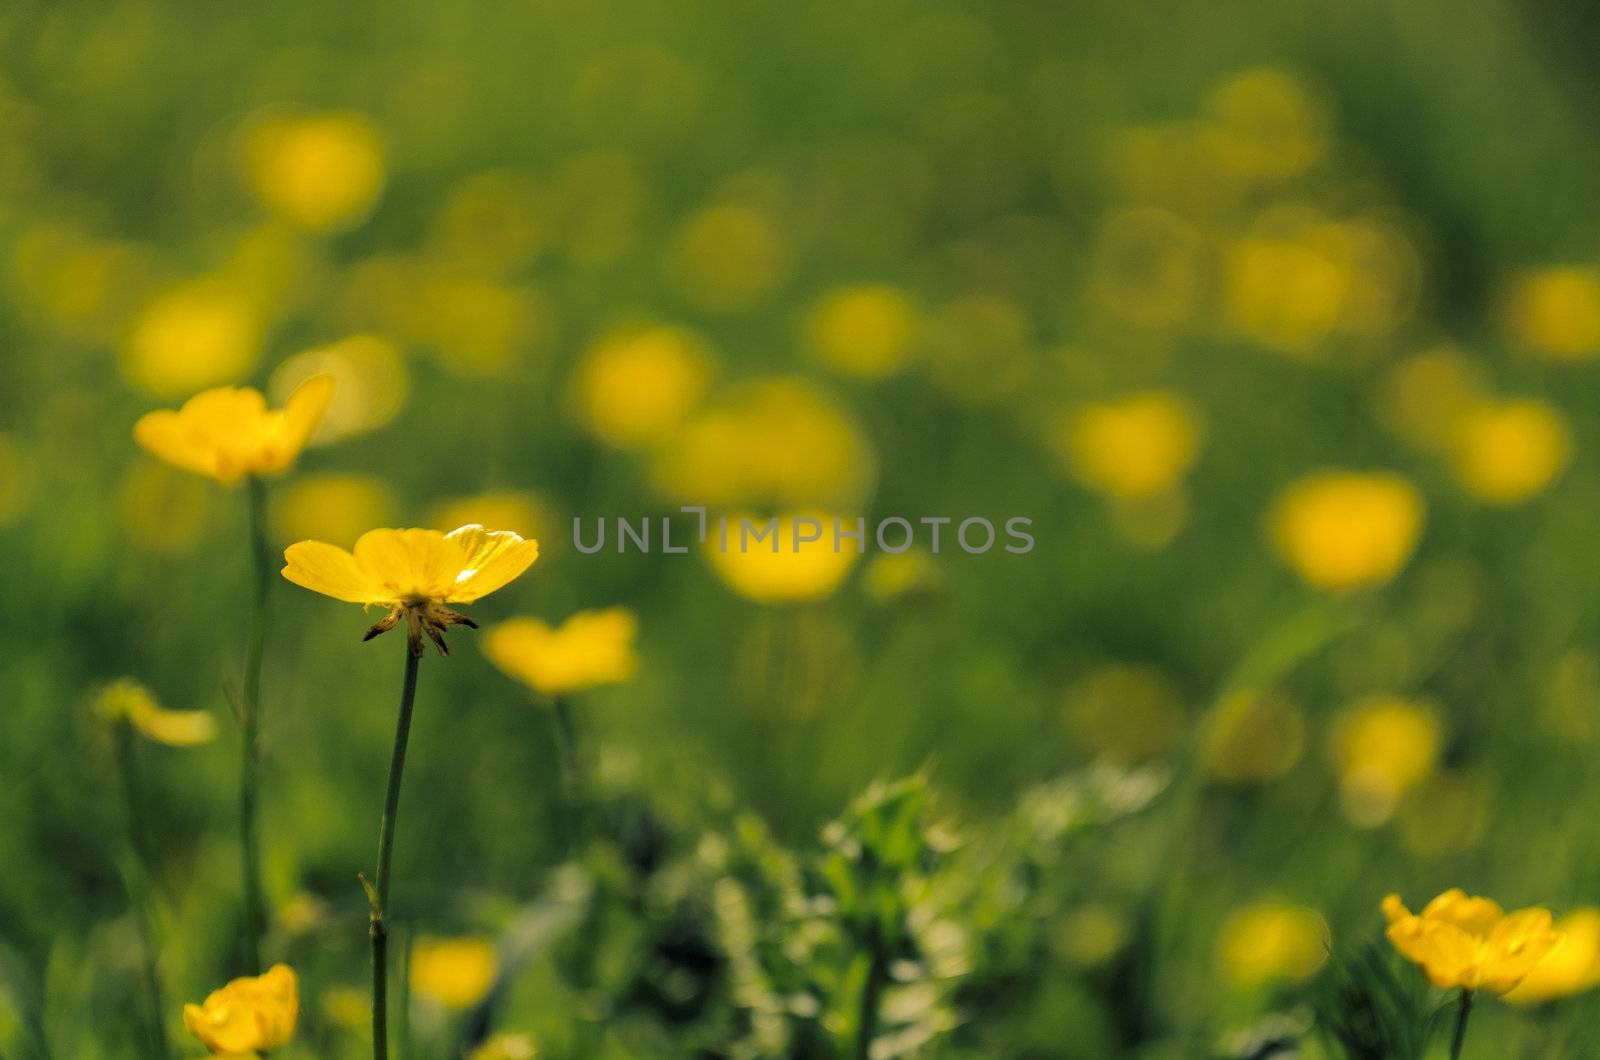 Buttercup meadow by Jez22